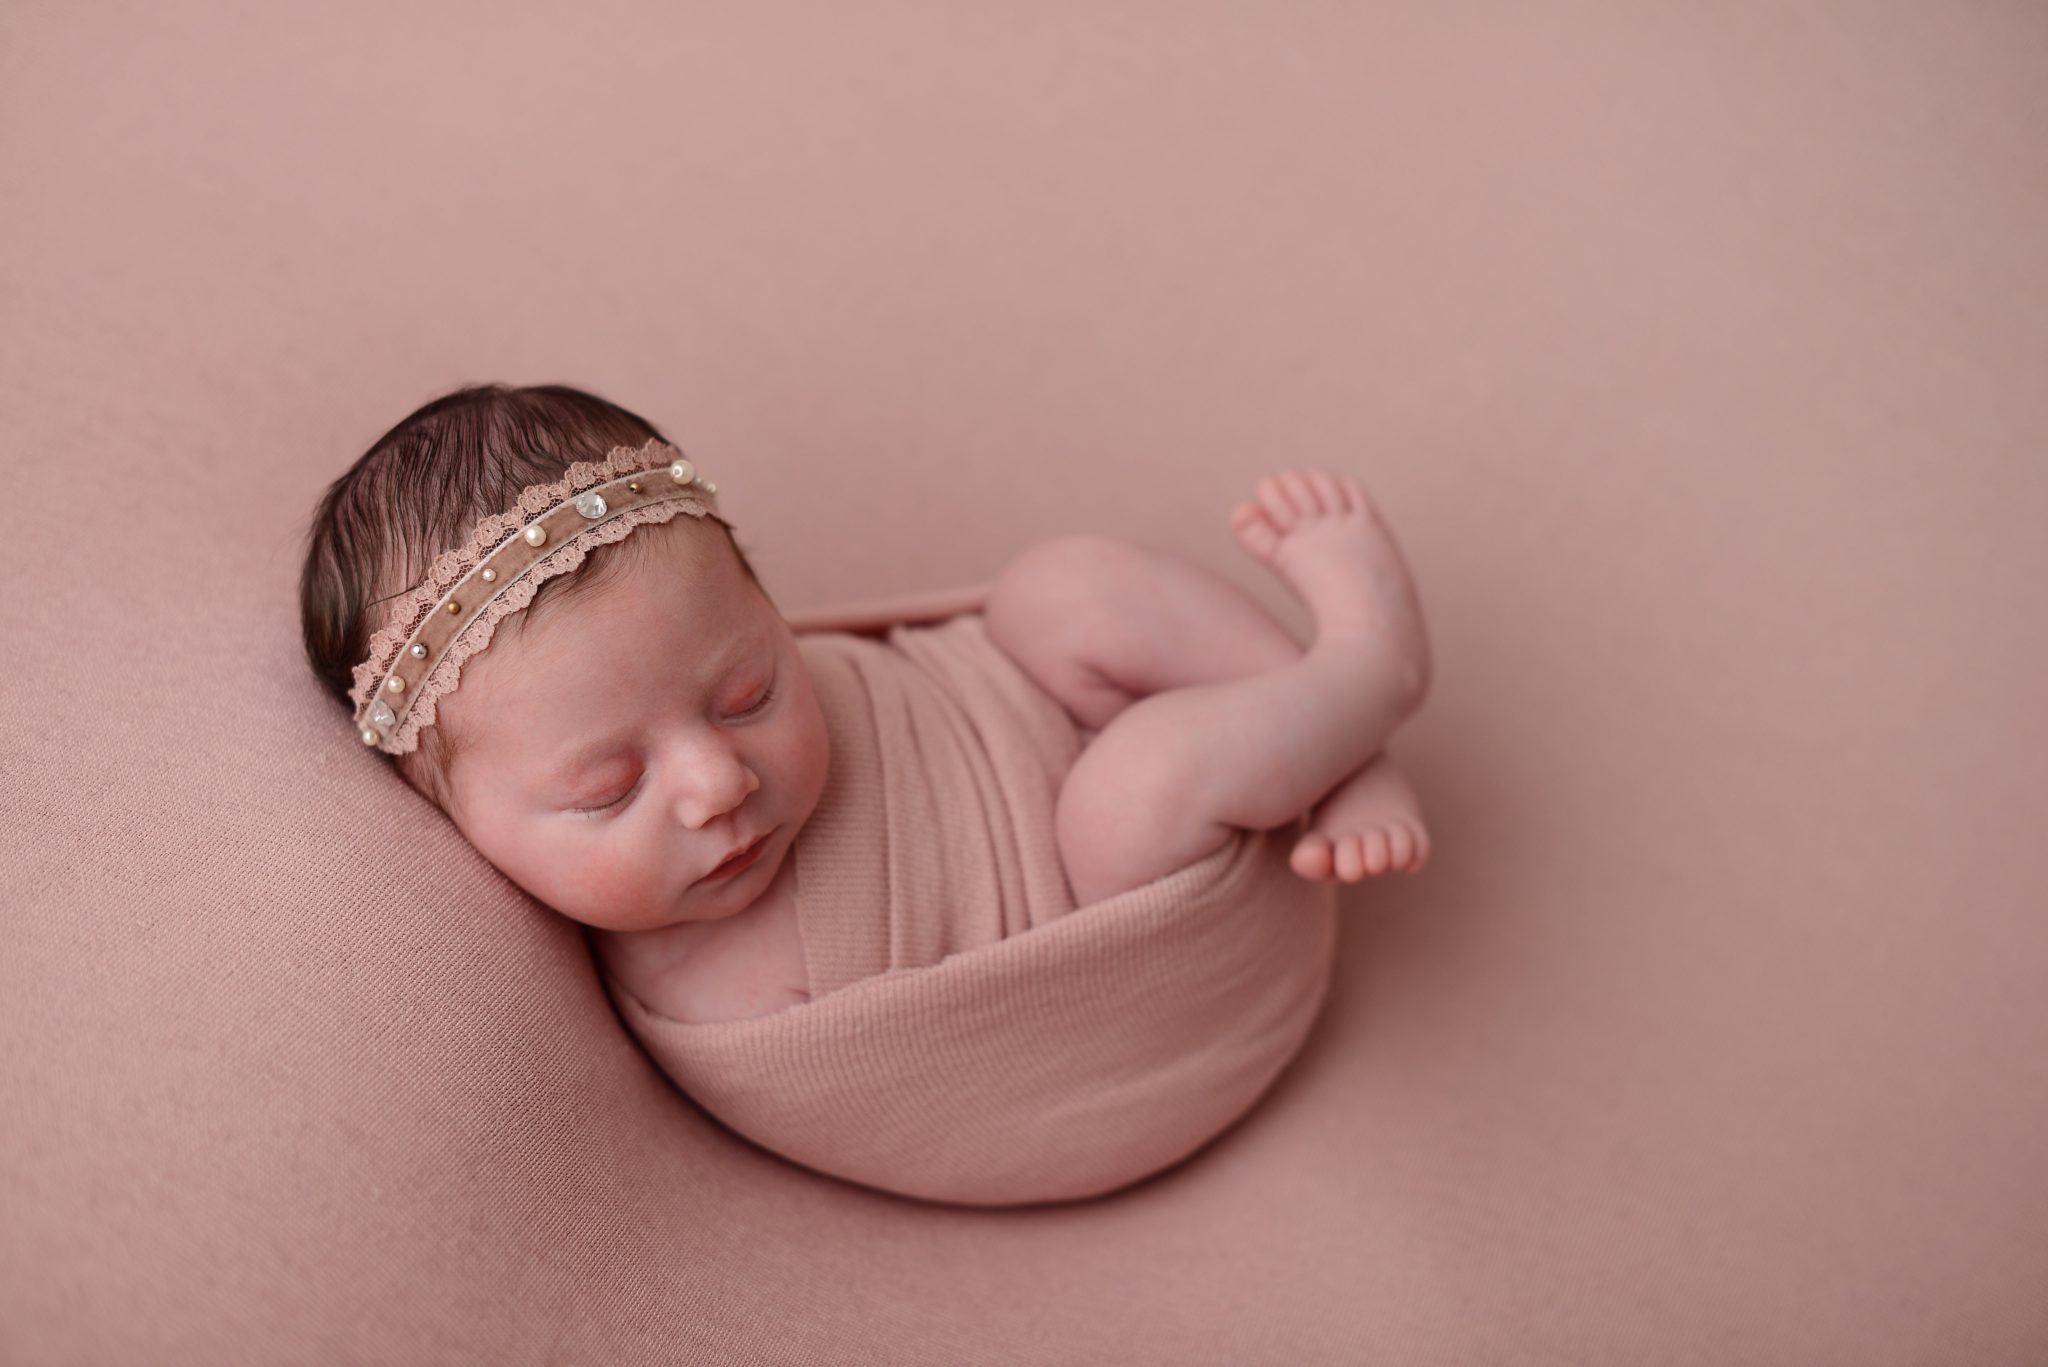 Newborn baby girl on pink background in Queens Portrait Studio